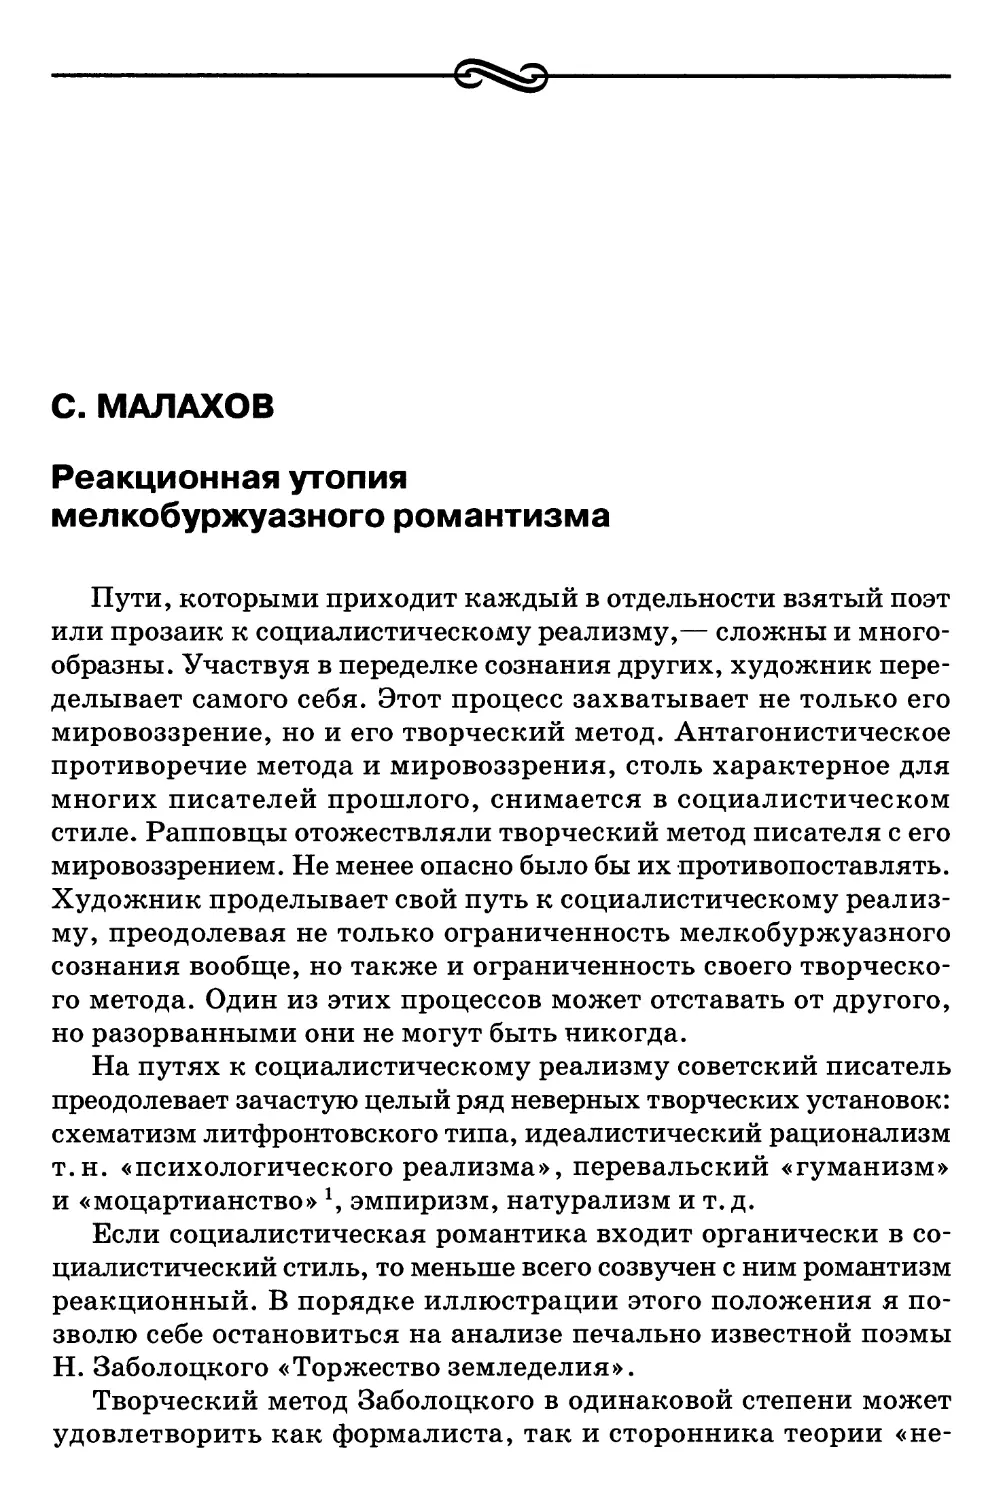 С. Малахов. Реакционная утопия мелкобуржуазного романтизма